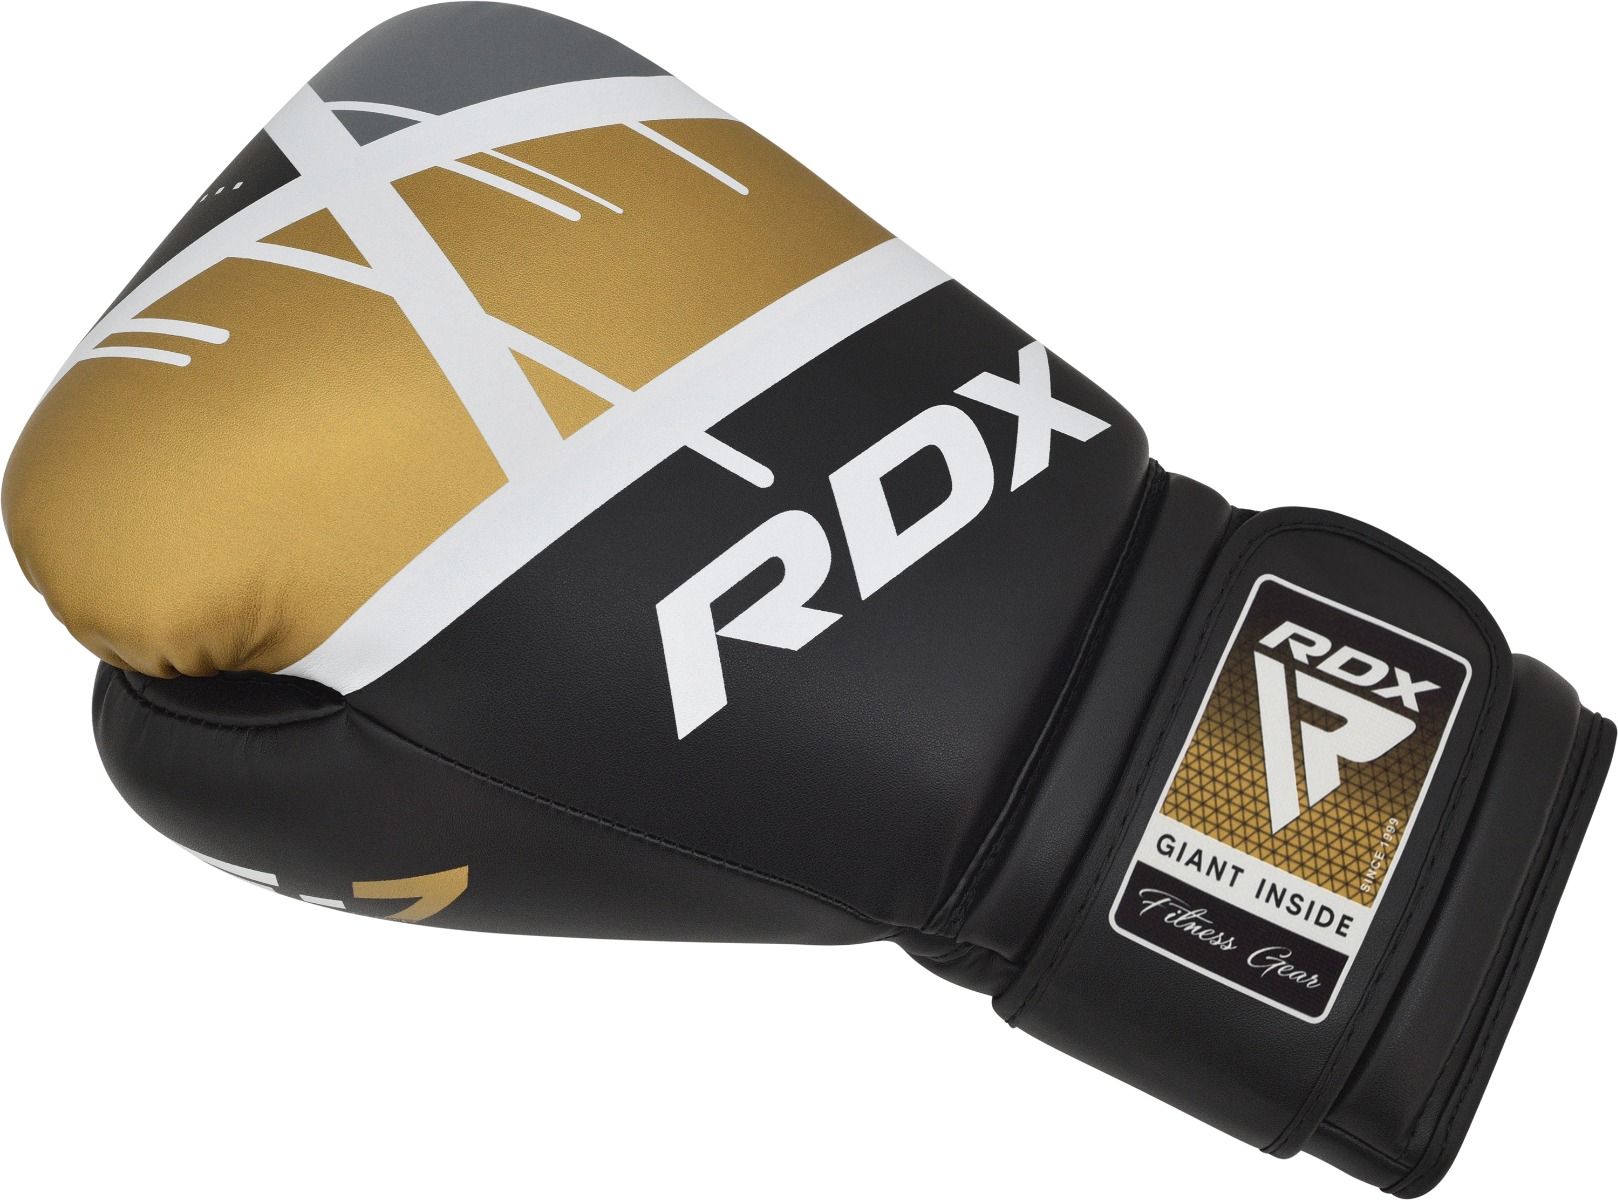 RDX F7 Ego Boxing Gloves#color_black